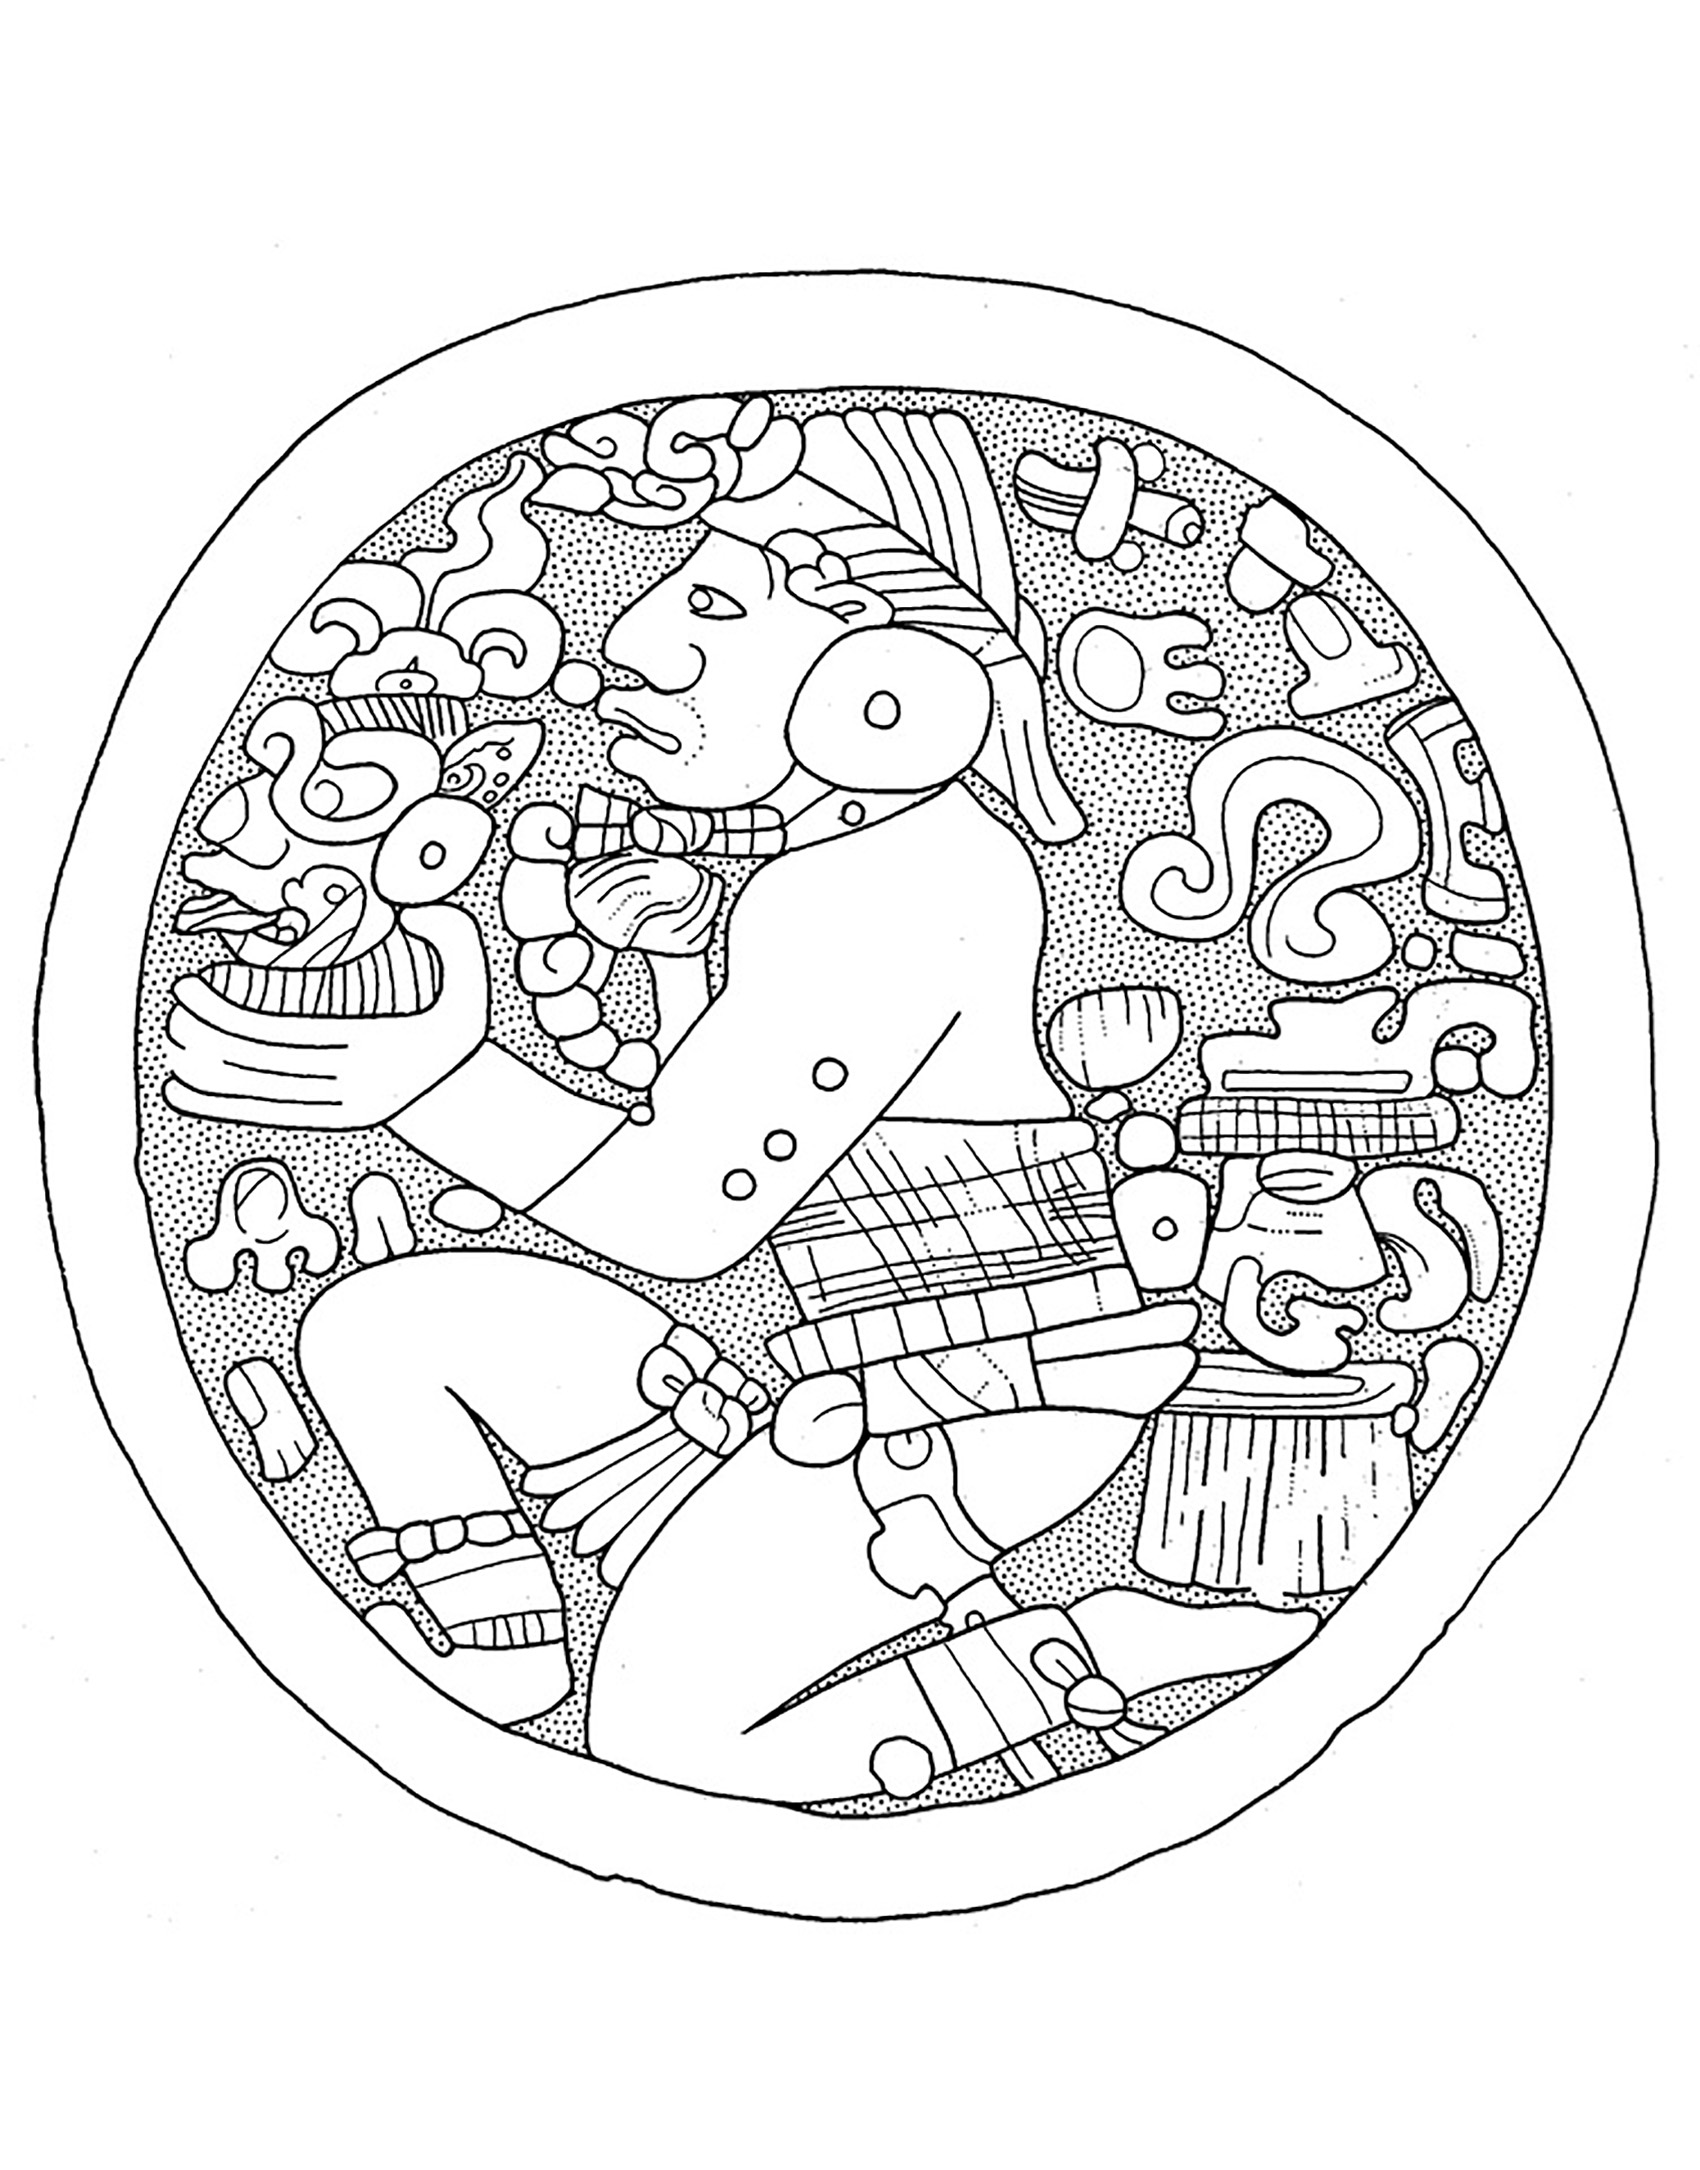 Frühklassische Tiefland-Maya-Ohrenschablone im De Young Museum. Zeichnung von N. Carter.